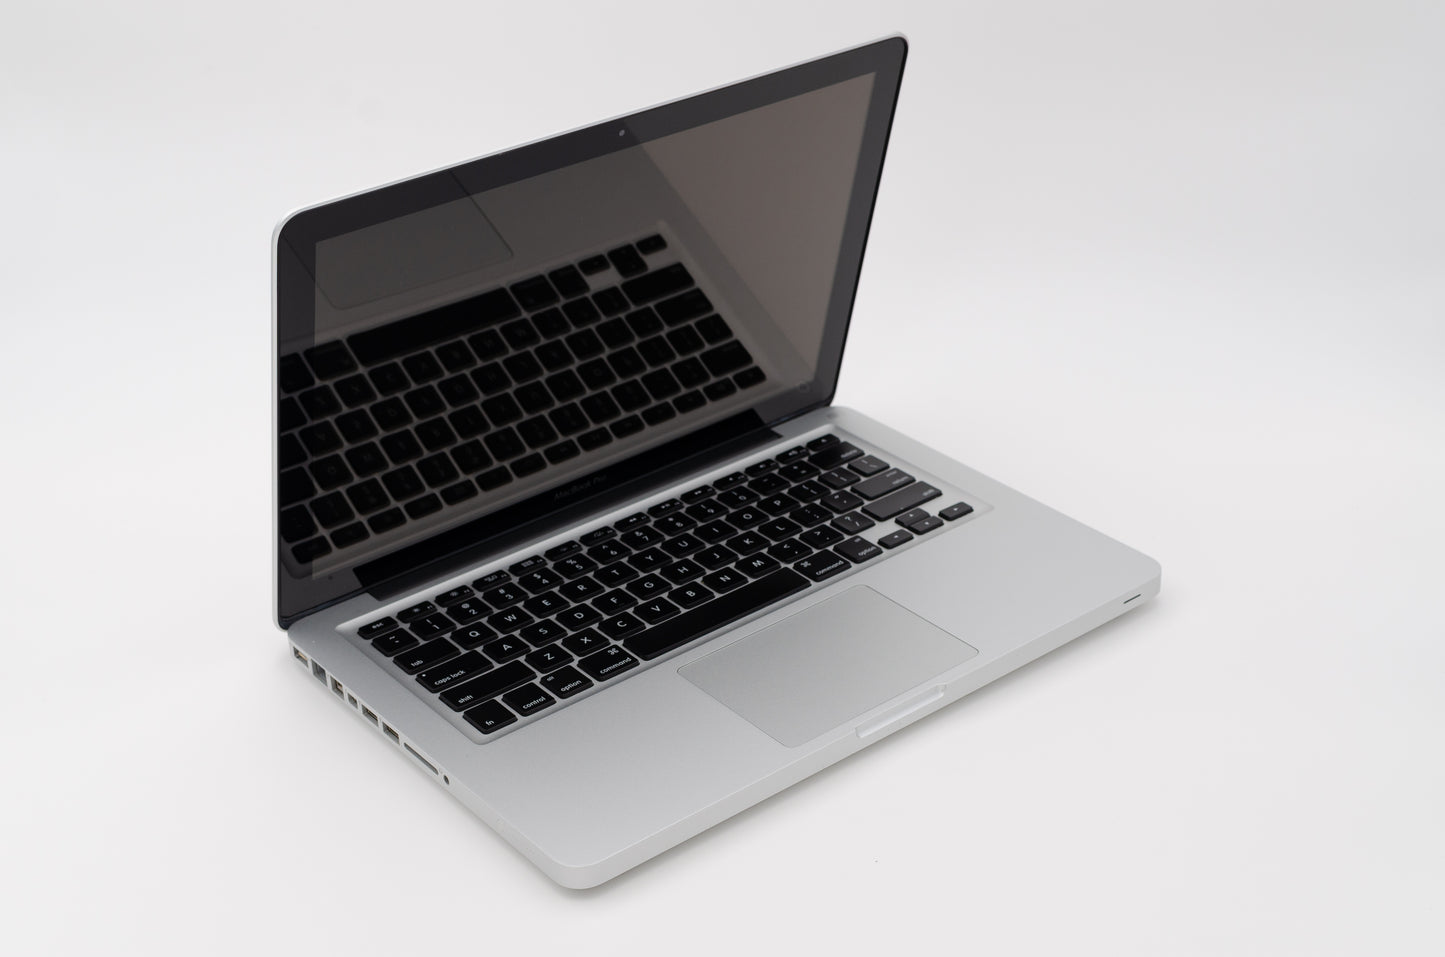 apple-late-2011-13.3-inch-macbook-pro-a1278-aluminum-dci5 - 2.4ghz processor, 4gb ram, hd 3000 - 348mb gpu-md313ll/a-4